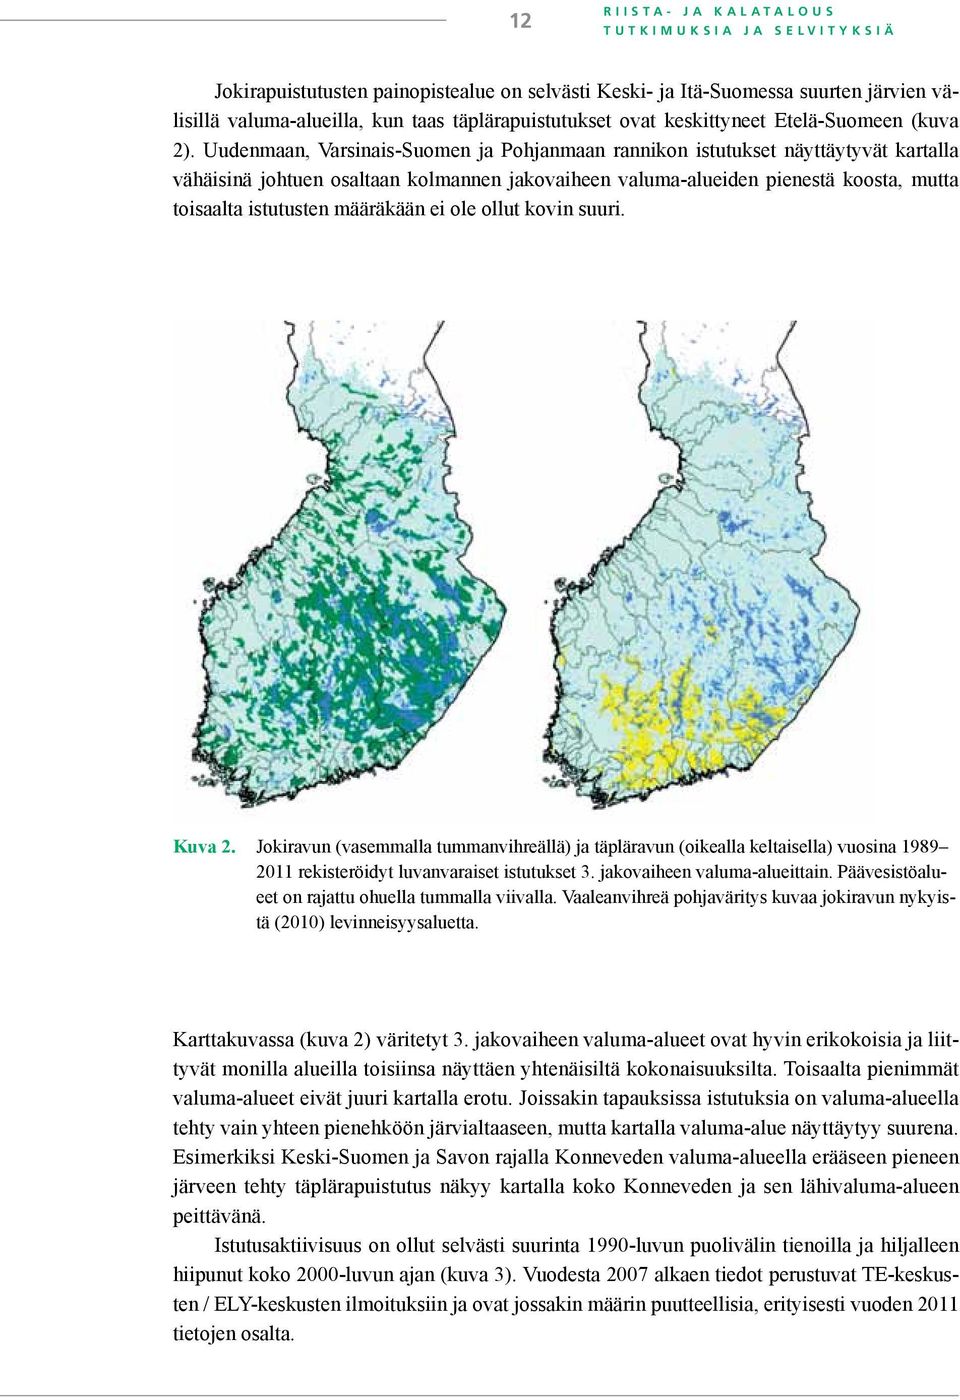 Uudenmaan, Varsinais-Suomen ja Pohjanmaan rannikon istutukset näyttäytyvät kartalla vähäisinä johtuen osaltaan kolmannen jakovaiheen valuma-alueiden pienestä koosta, mutta toisaalta istutusten